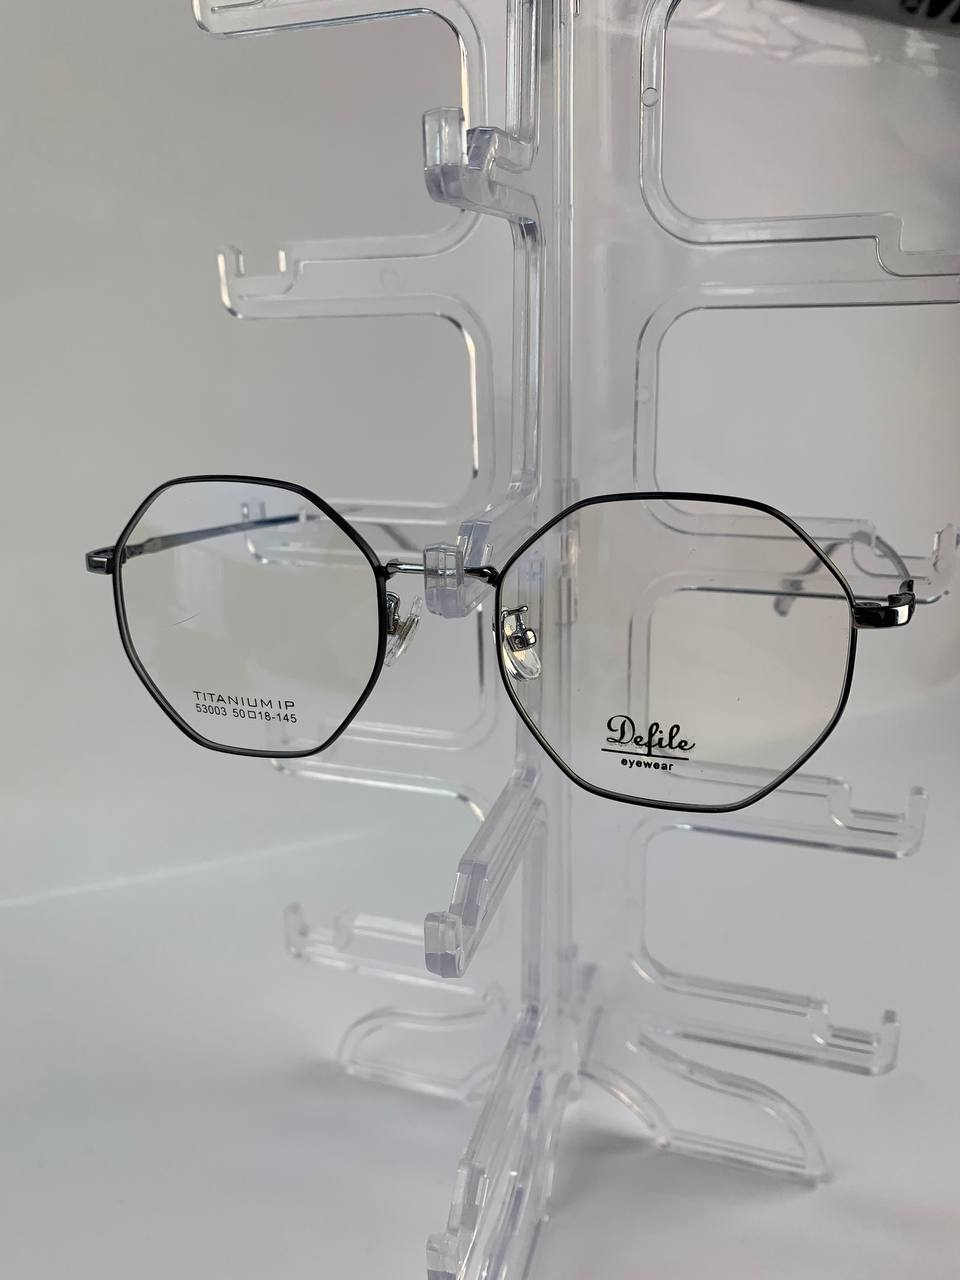 Оправа для окулярів Defile метал 53003, жіноча, чоловіча, підліток.